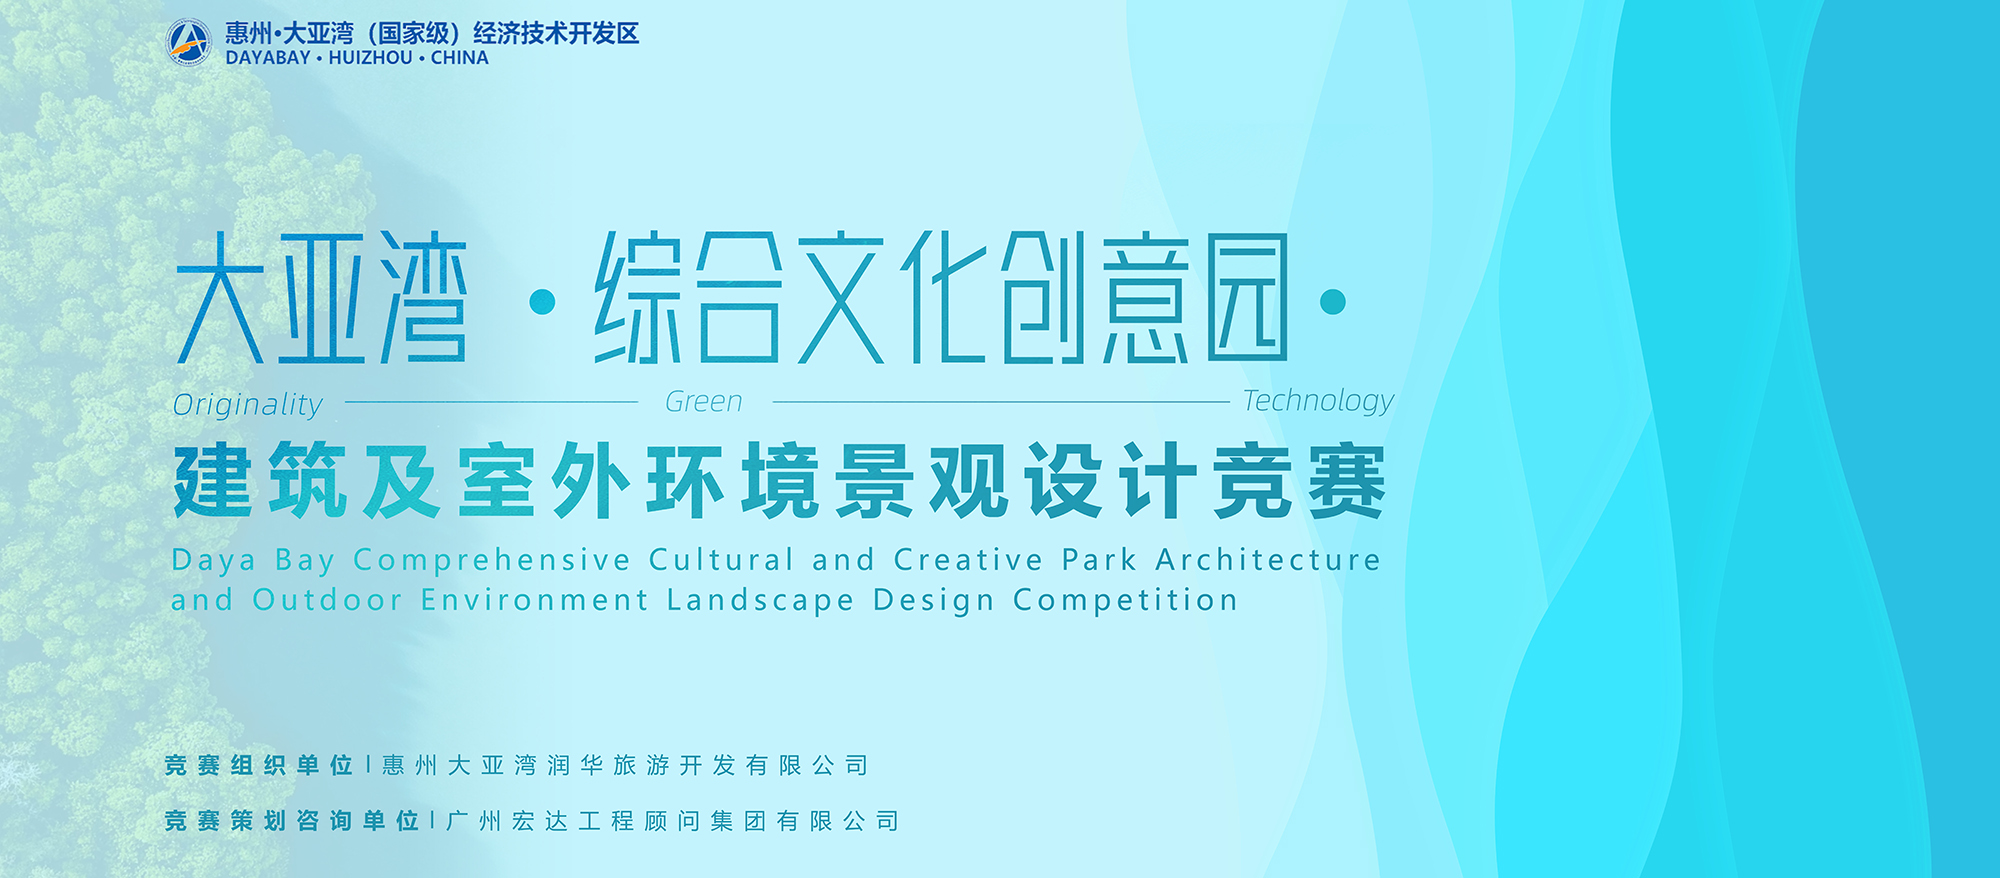 大亚湾综合文化创意园建筑及室外环境景观设计竞赛